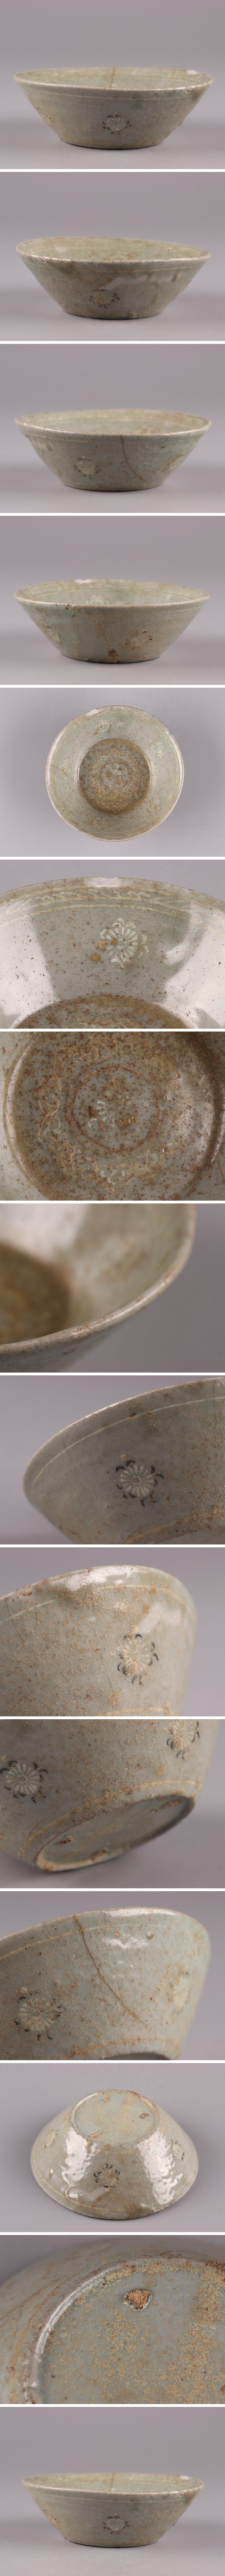 国産人気古美術 朝鮮古陶磁器 高麗青磁 白黒象嵌 皿 時代物 極上品 初だし品 4410 高麗